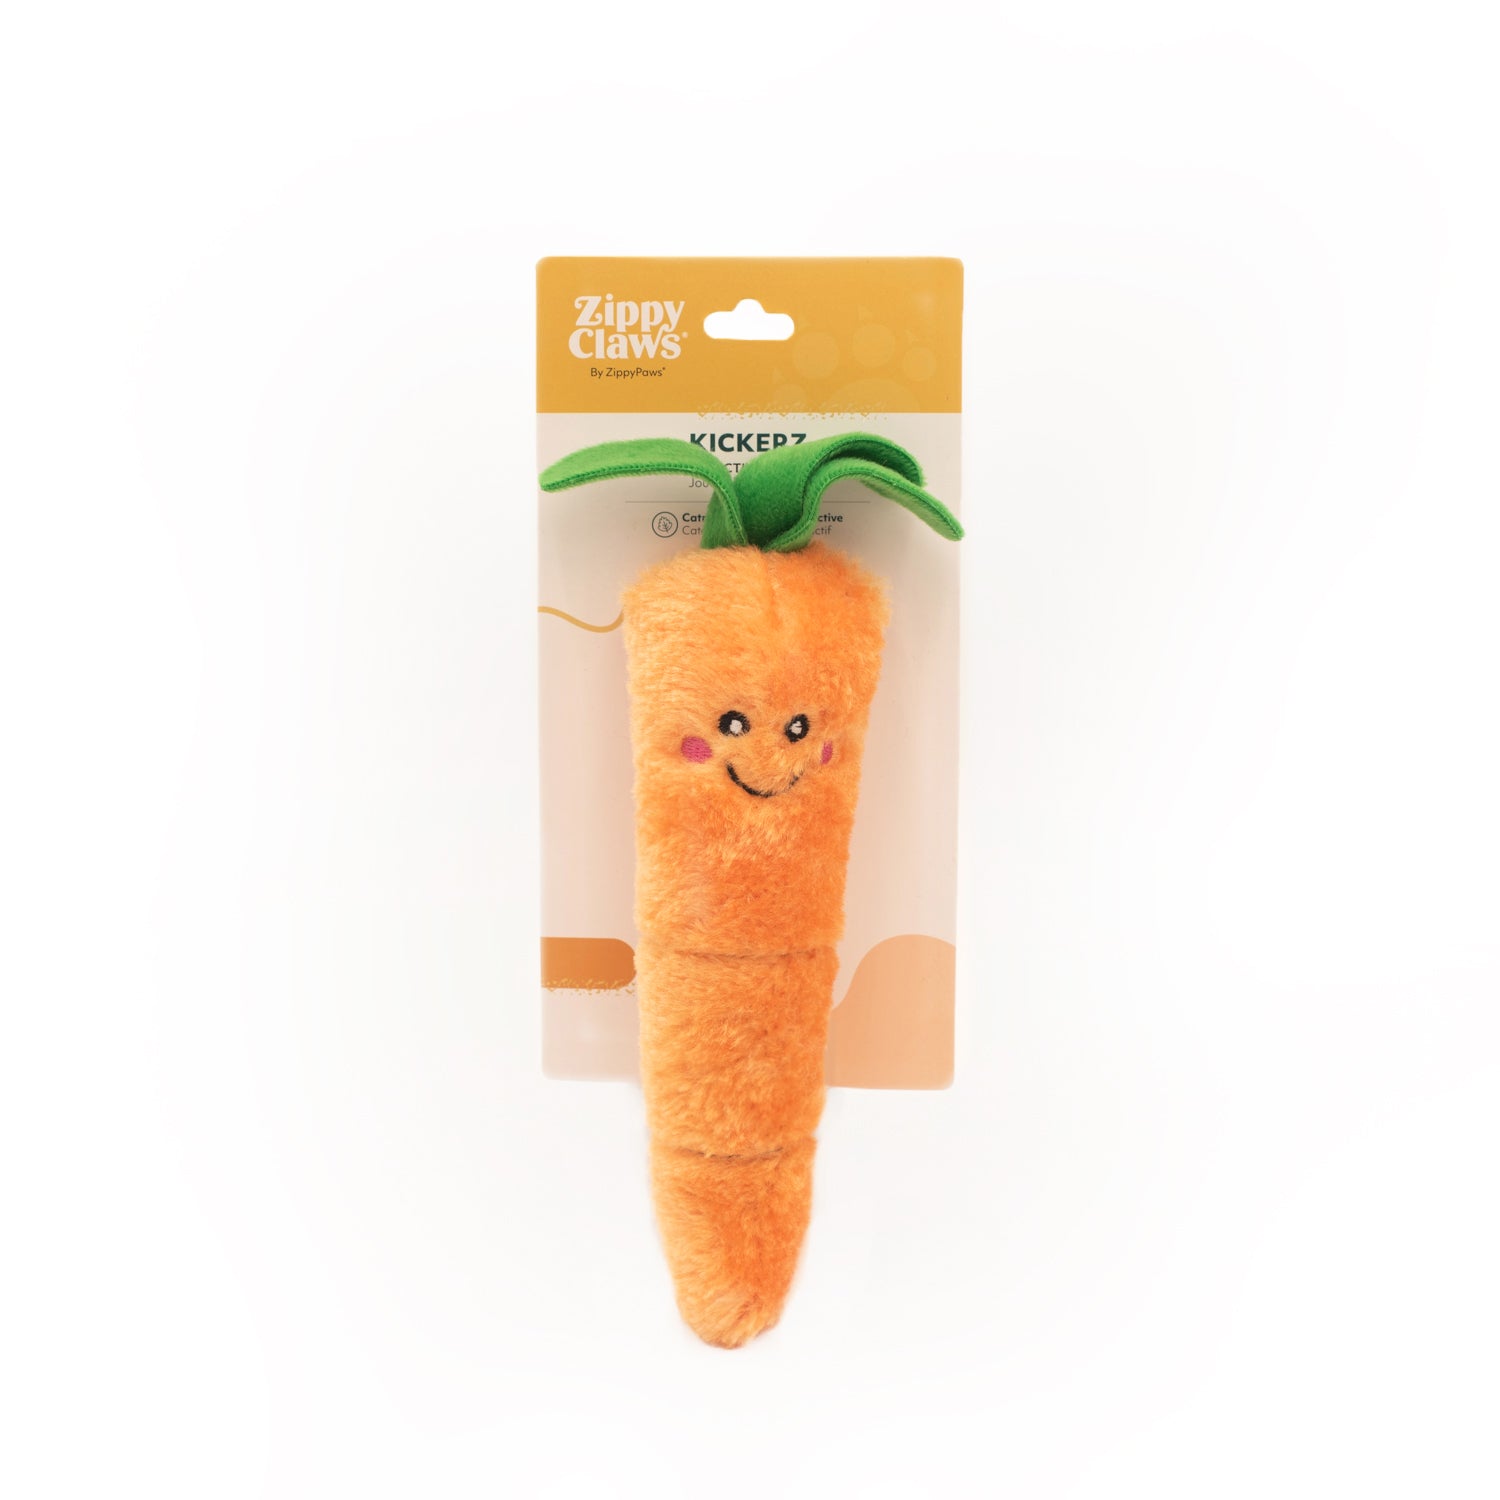 ZippyClaws - Kickerz Carrot